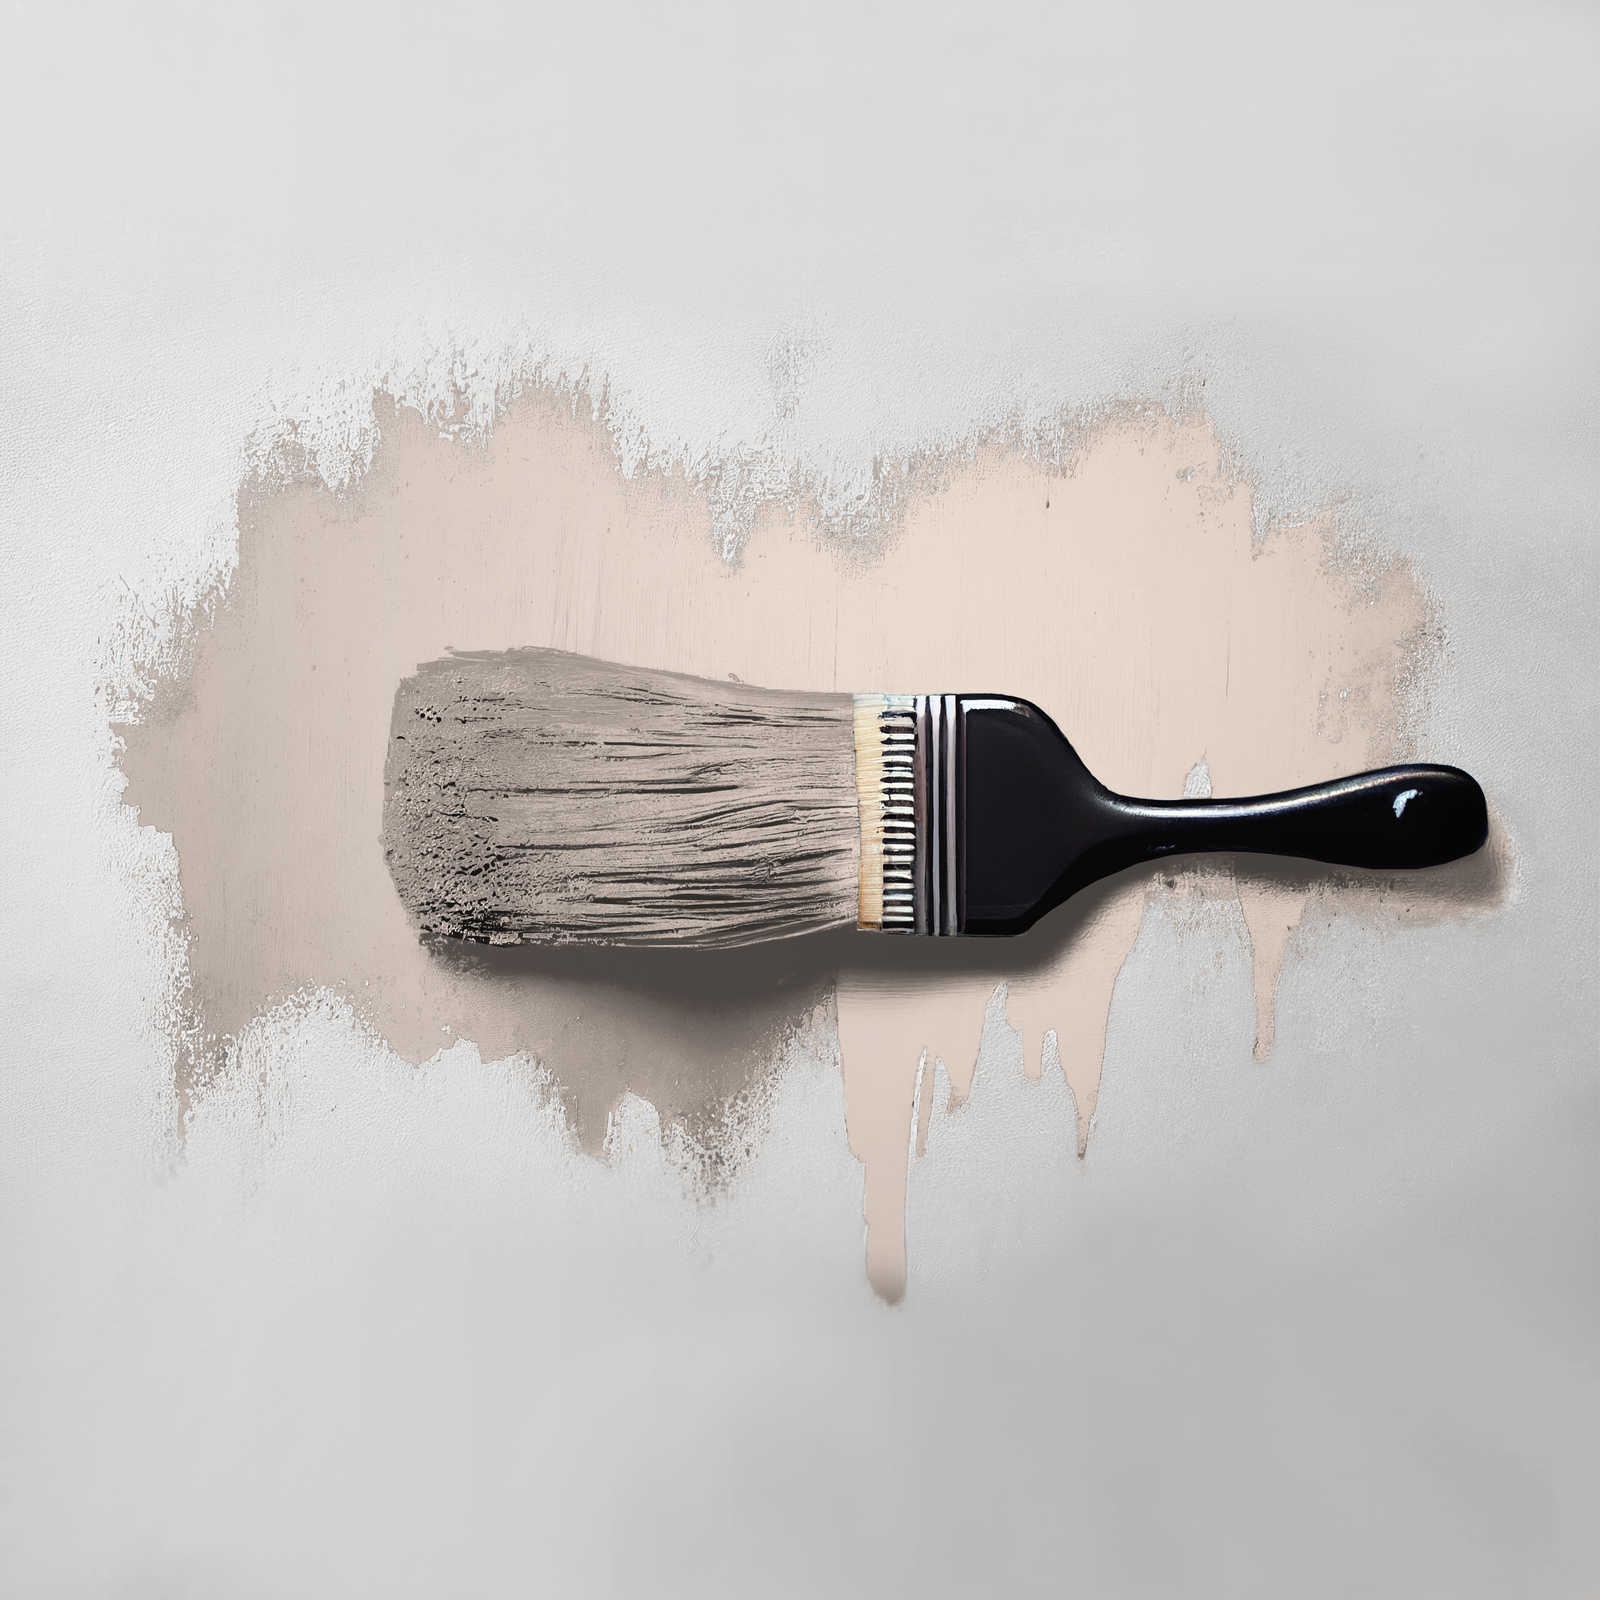             Wall Paint TCK7000 »Himalaya Salt« in lovely beige – 2.5 litre
        